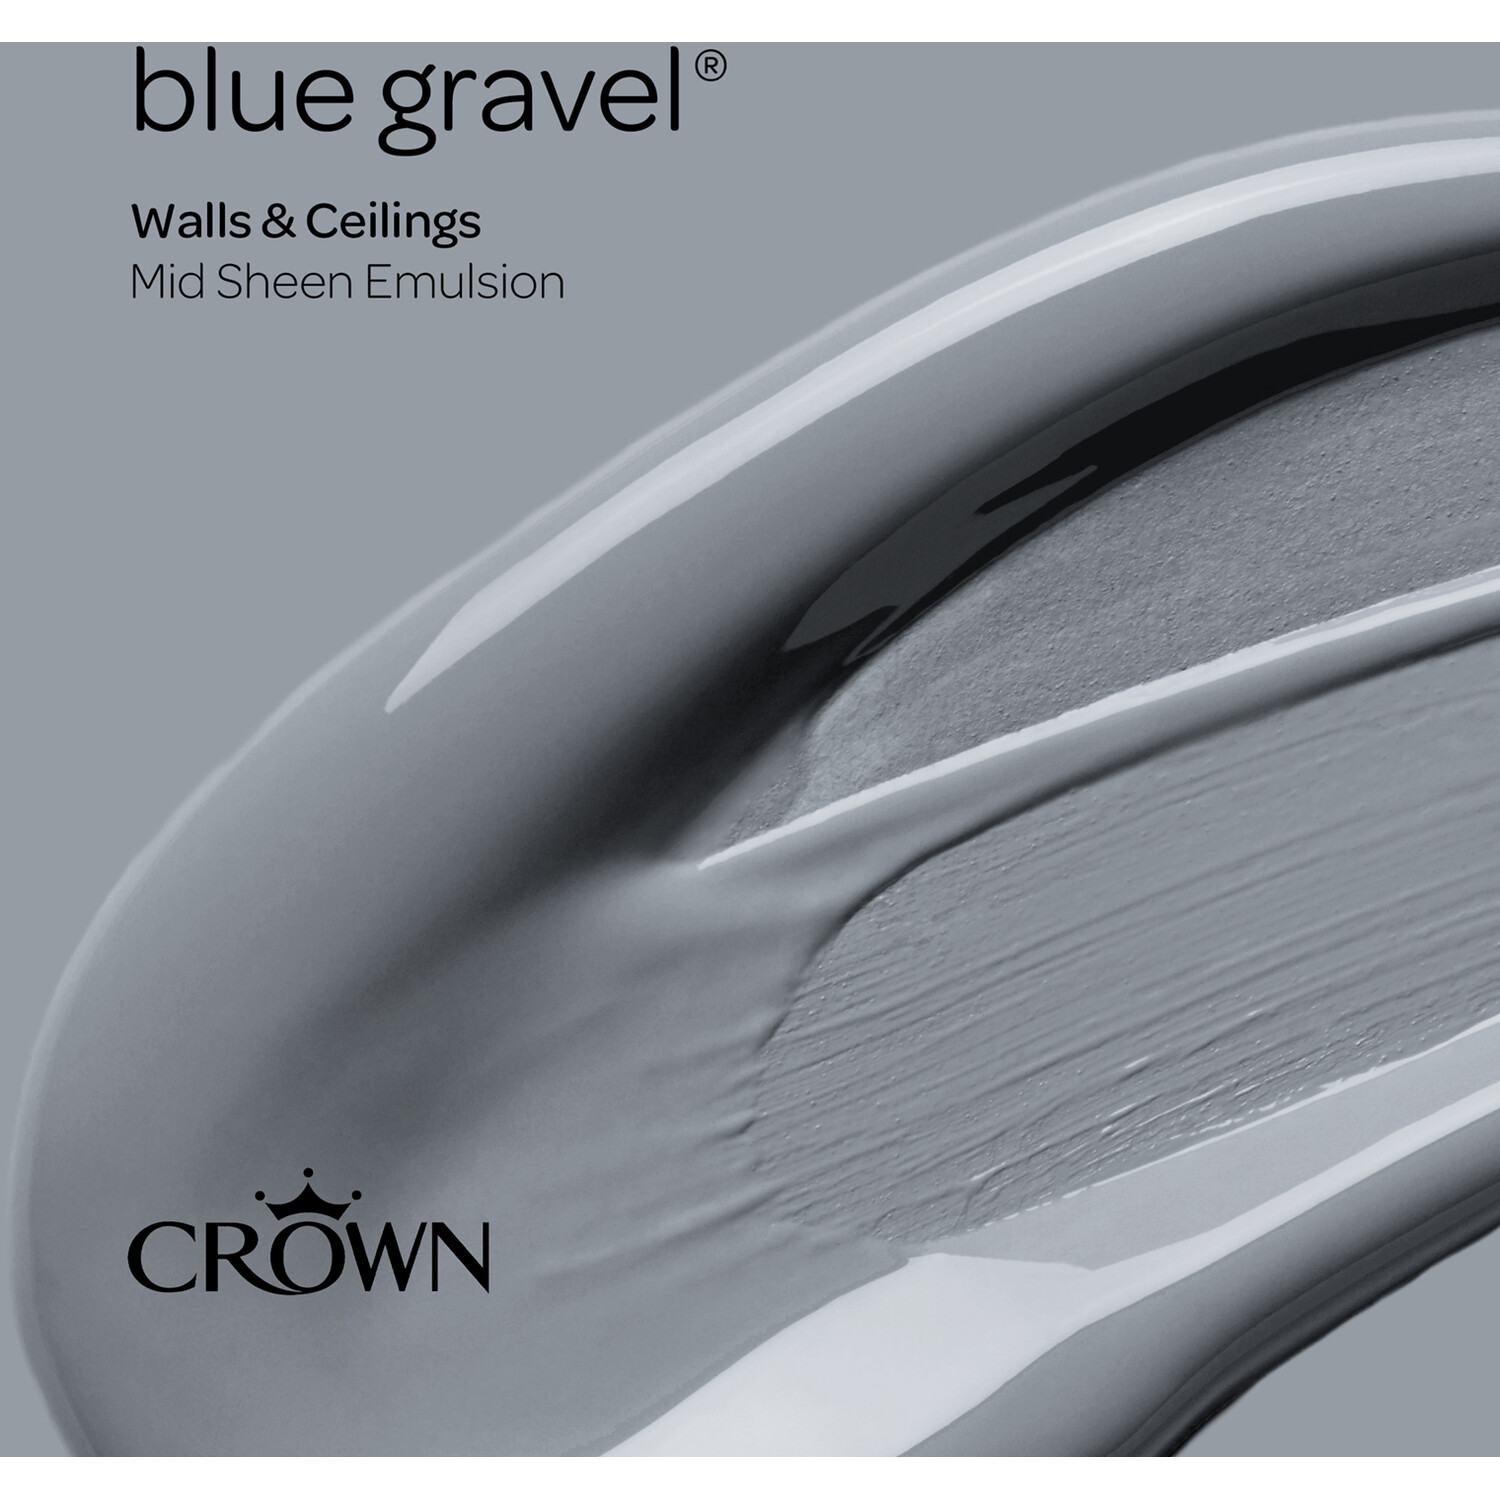 Crown Walls & Ceilings Blue Gravel Mid Sheen Emulsion Paint 2.5L Image 4